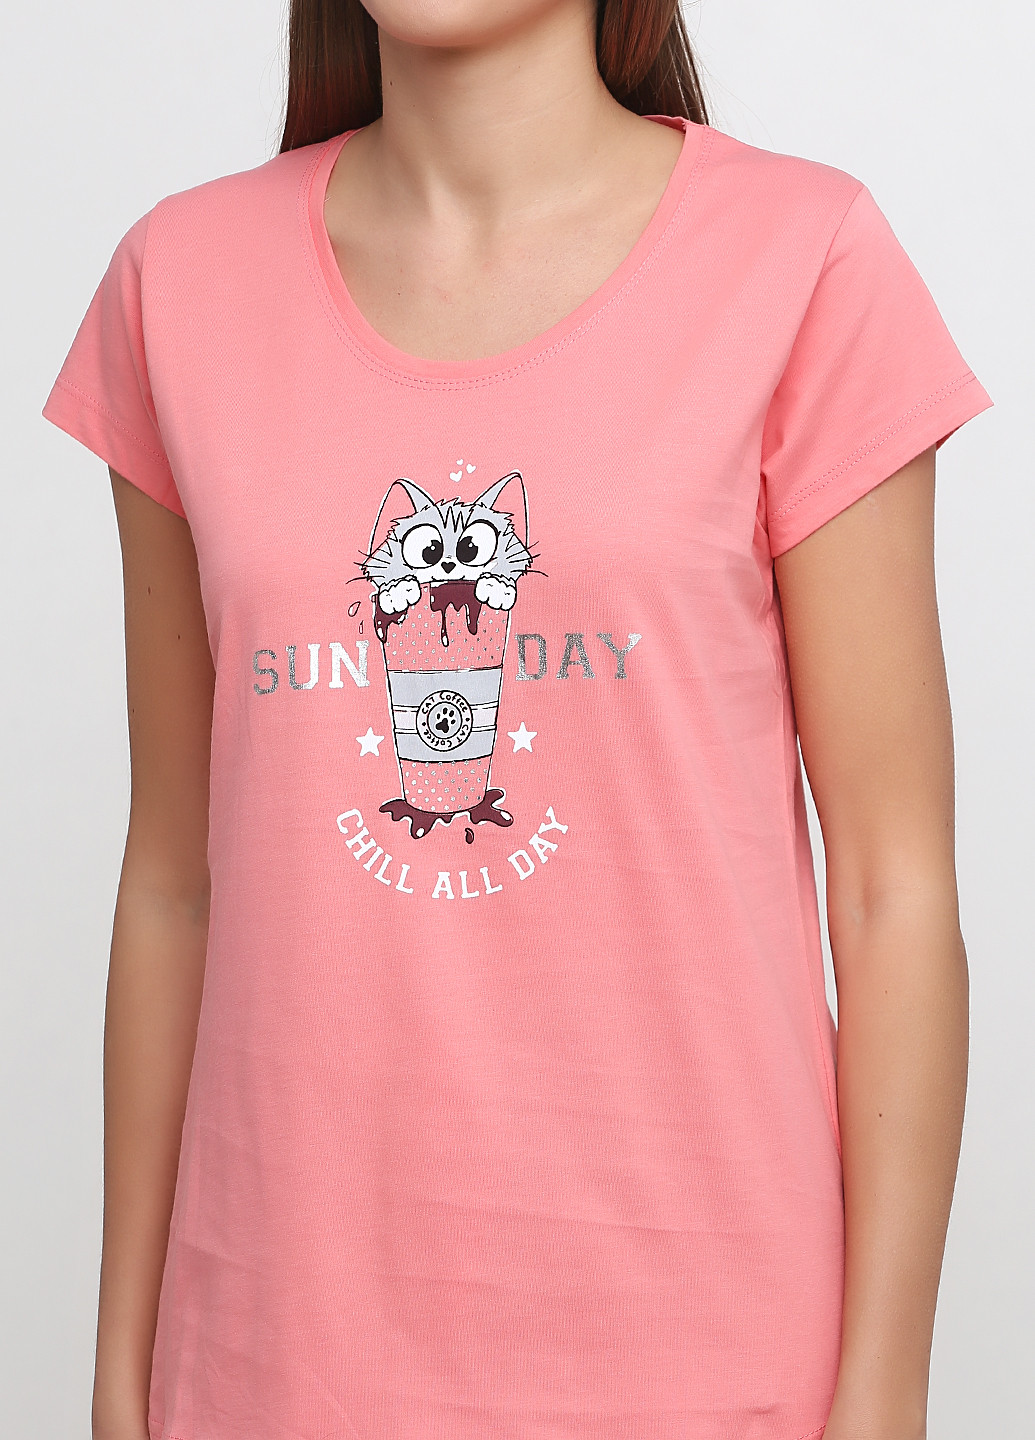 Розовый демисезонный комплект (футболка, бриджи) Vienetta